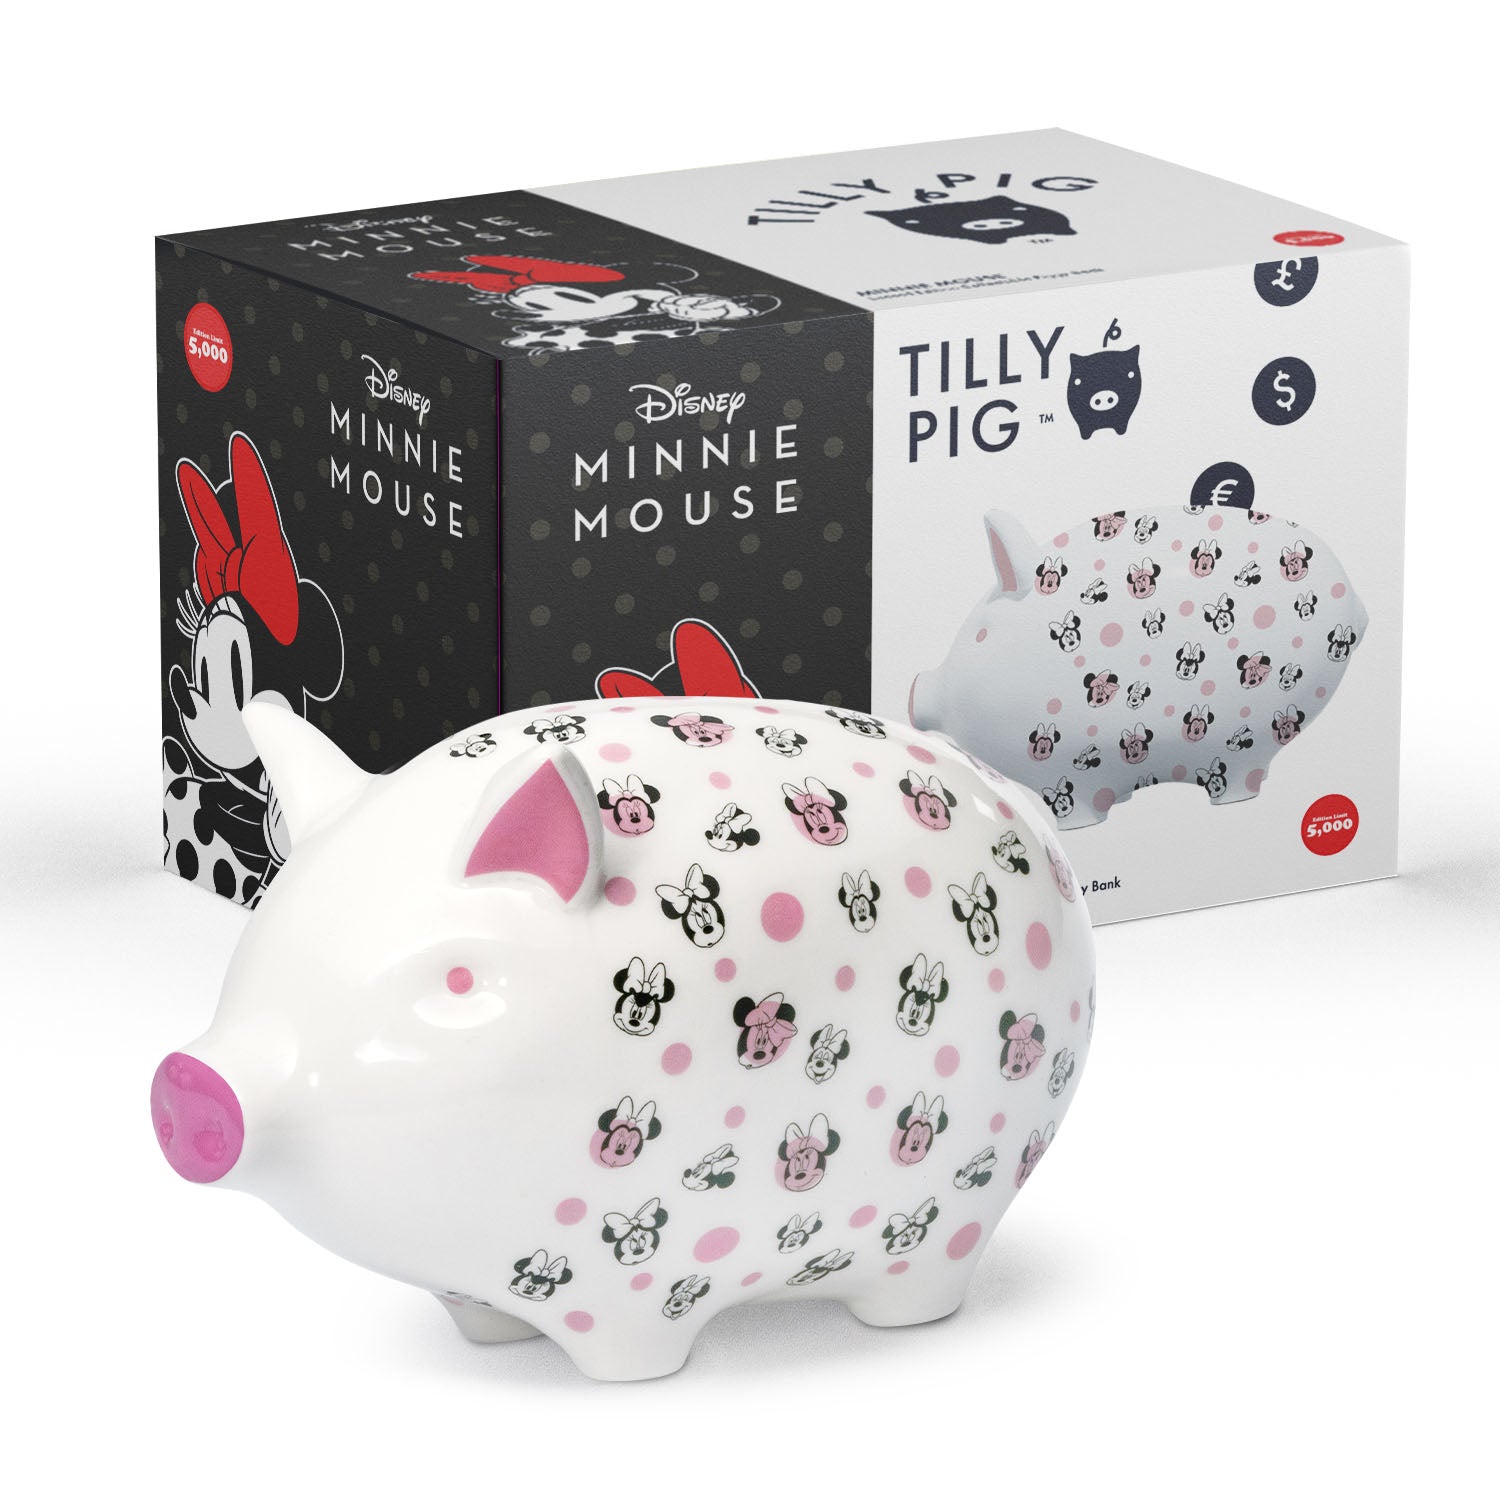 Tilly Pig - Disney Minnie Mouse Piggy Bank